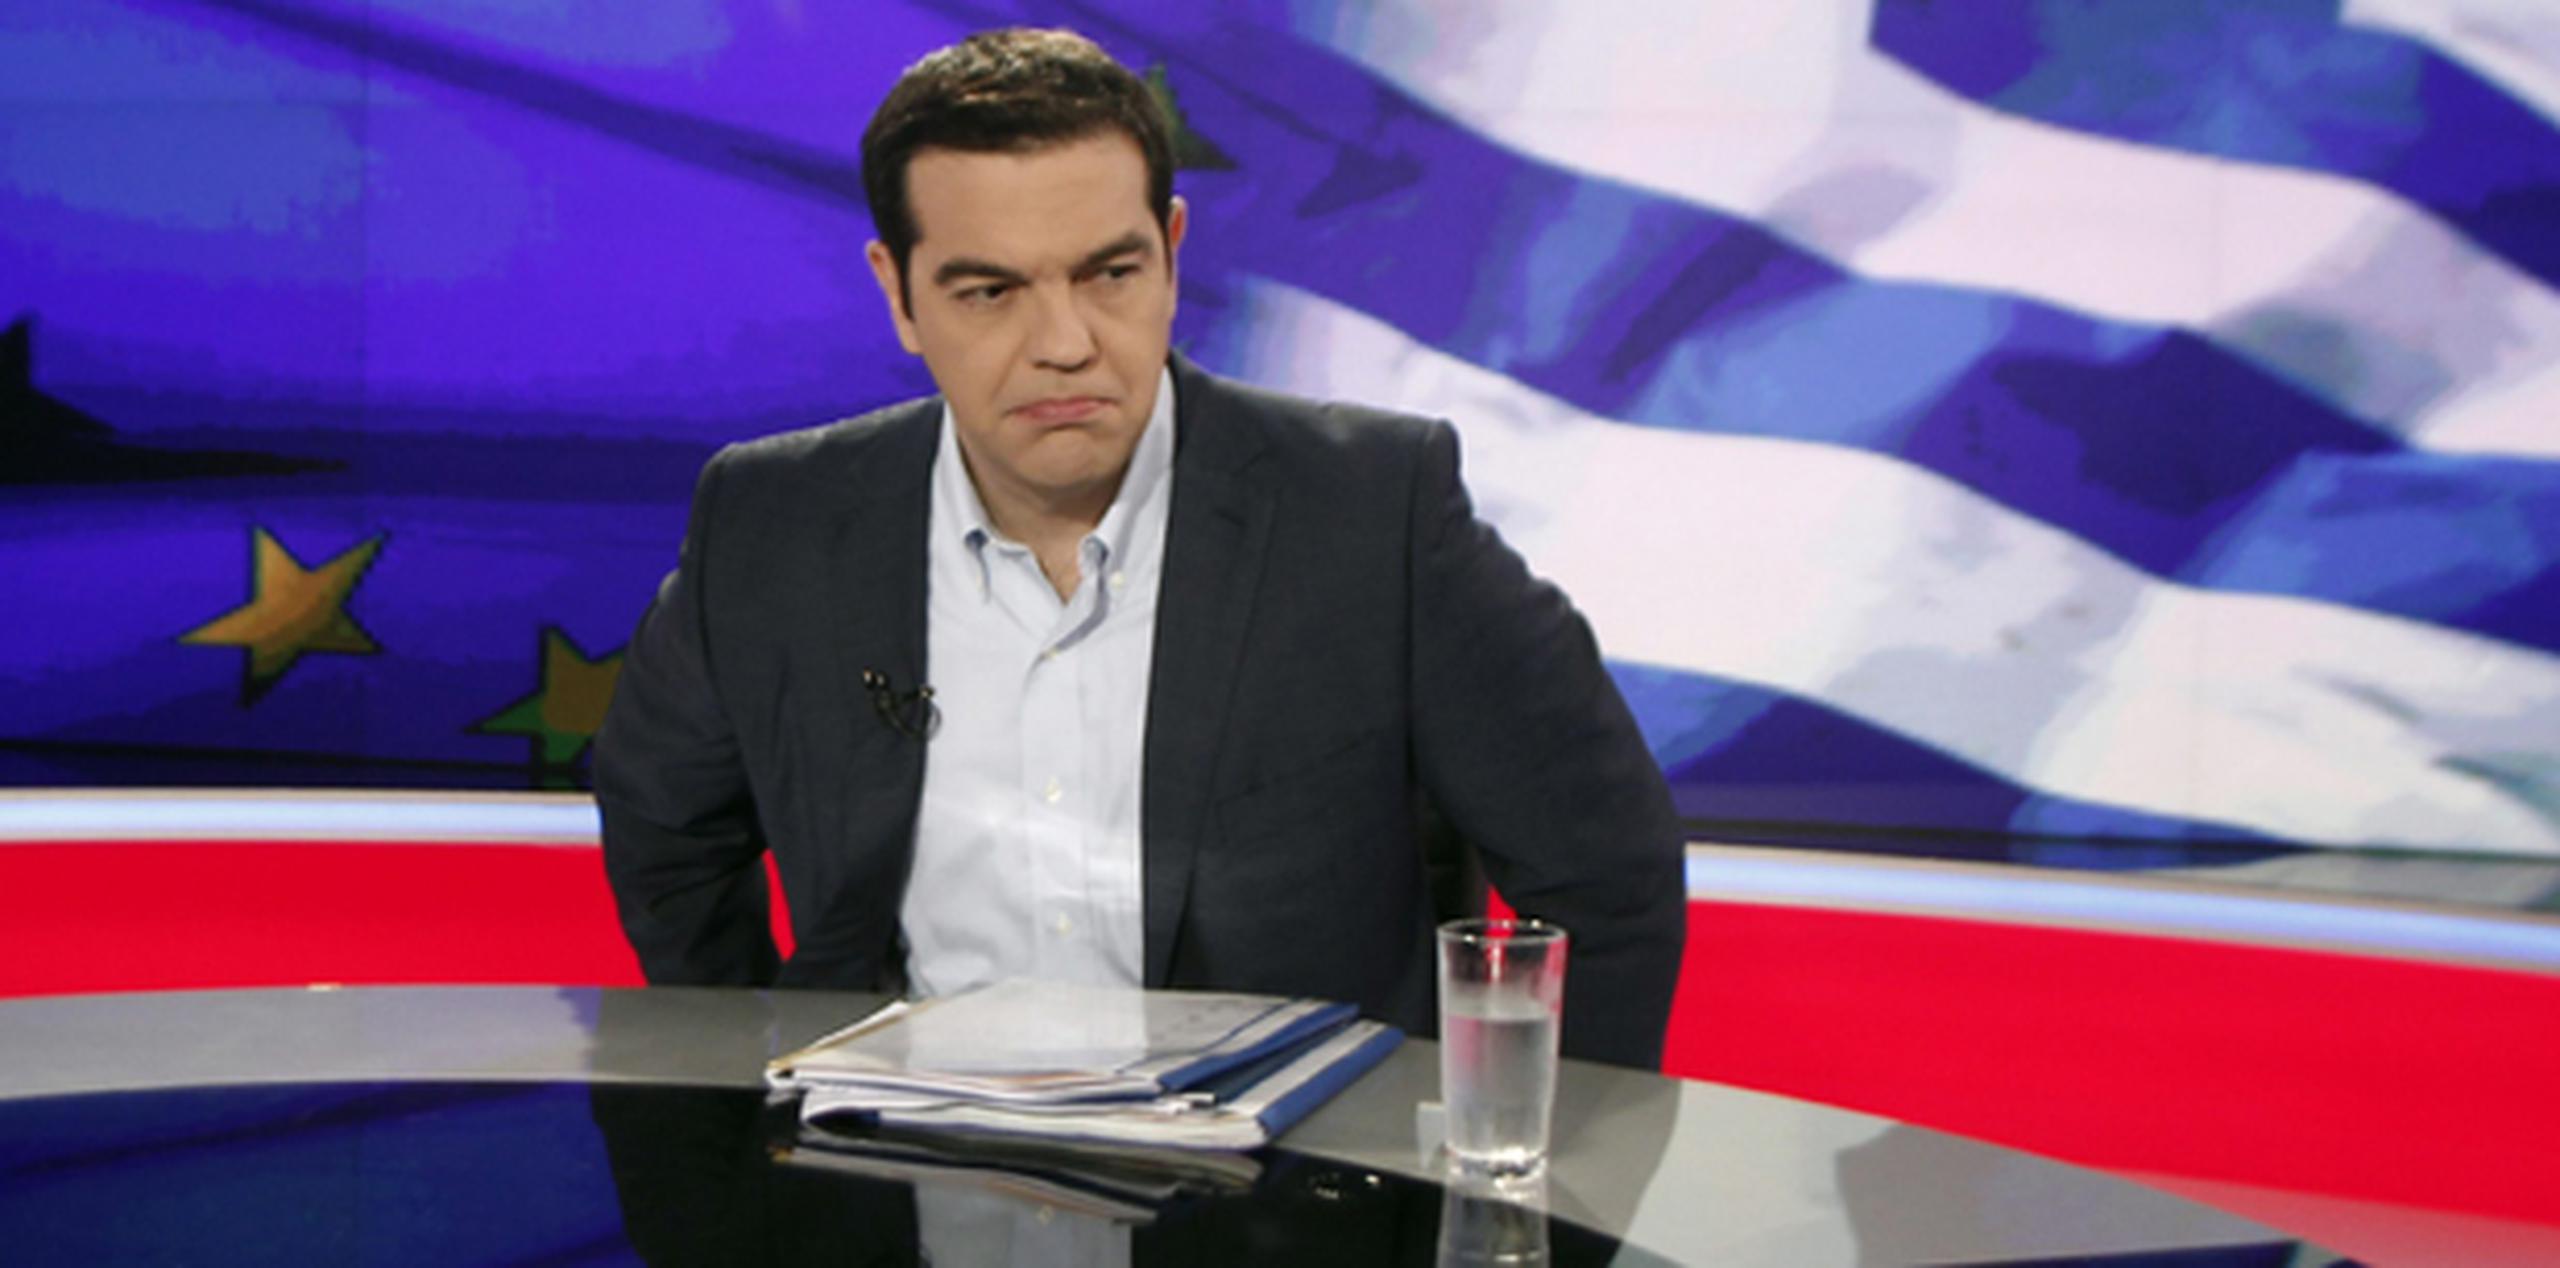 El primer ministro, Alexis Tsipras, sostiene que las peticiones de los acreedores son duras medidas de austeridad que no se pueden aceptar tras seis años de recesión. (EFE)